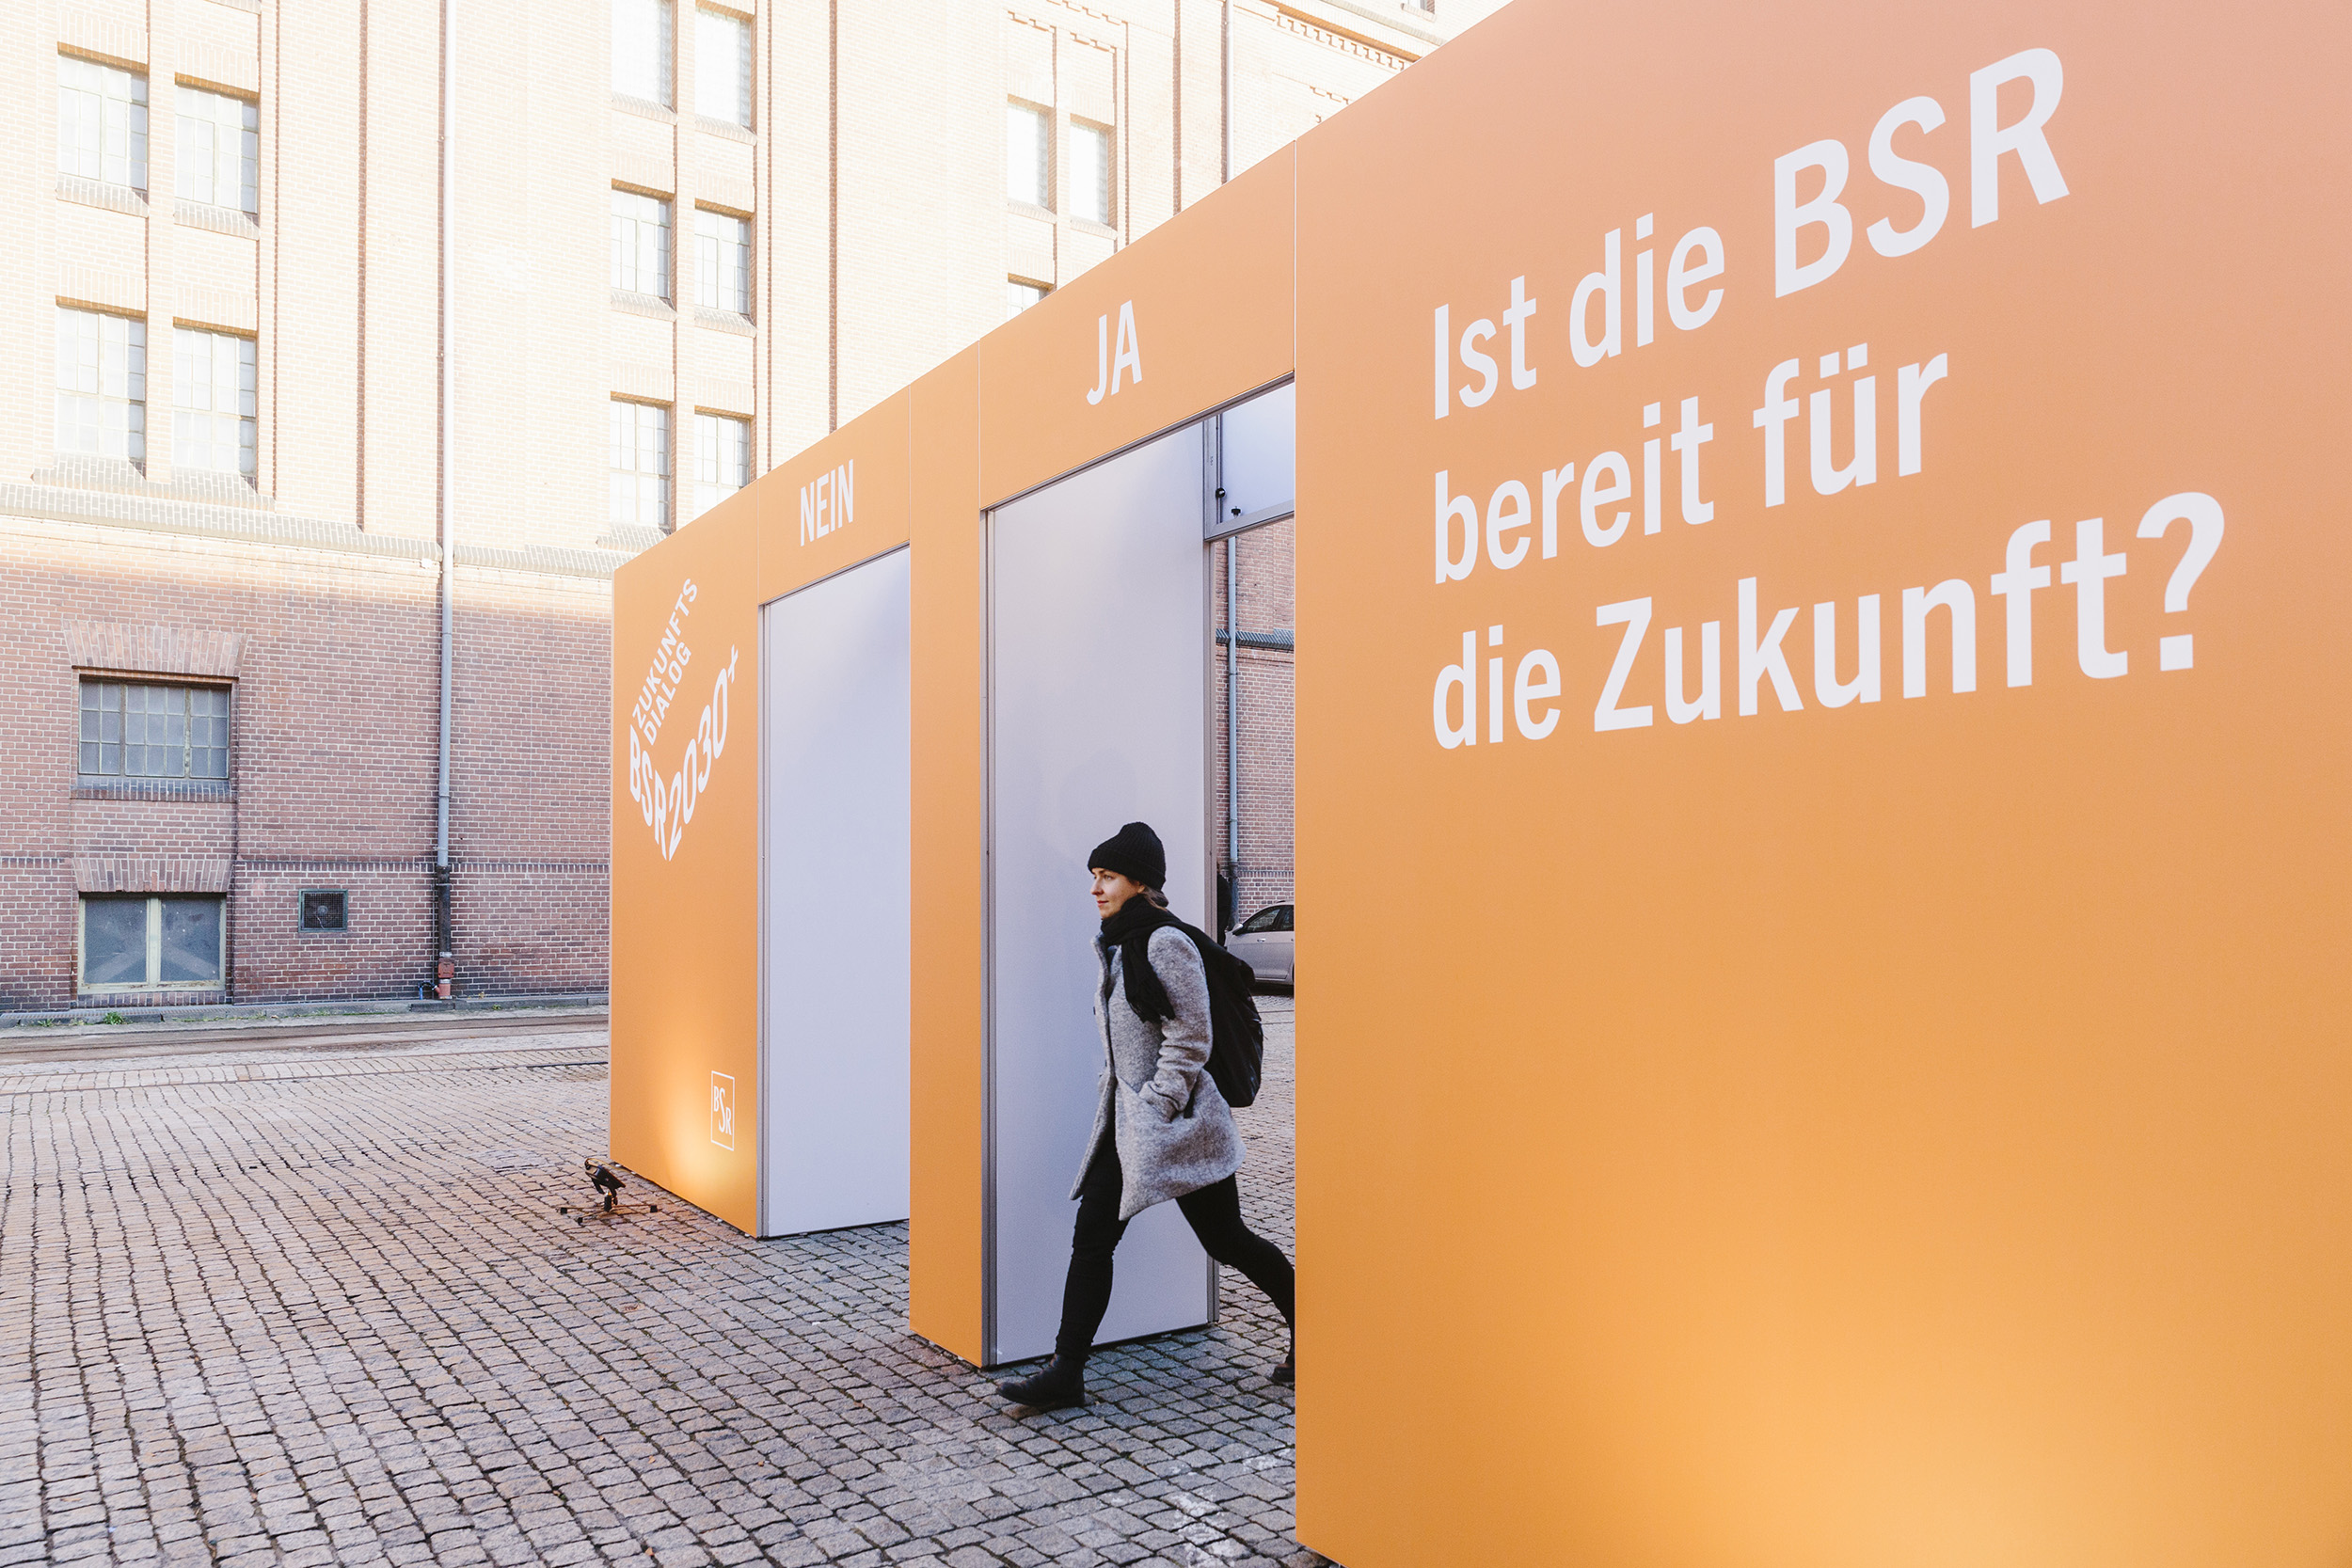 Eine Frau, die durch ein großes orangefarbenen Tor durch geht. Auf dem Tor steht die Frage: "Ist die BSR bereit für die Zukunft?".